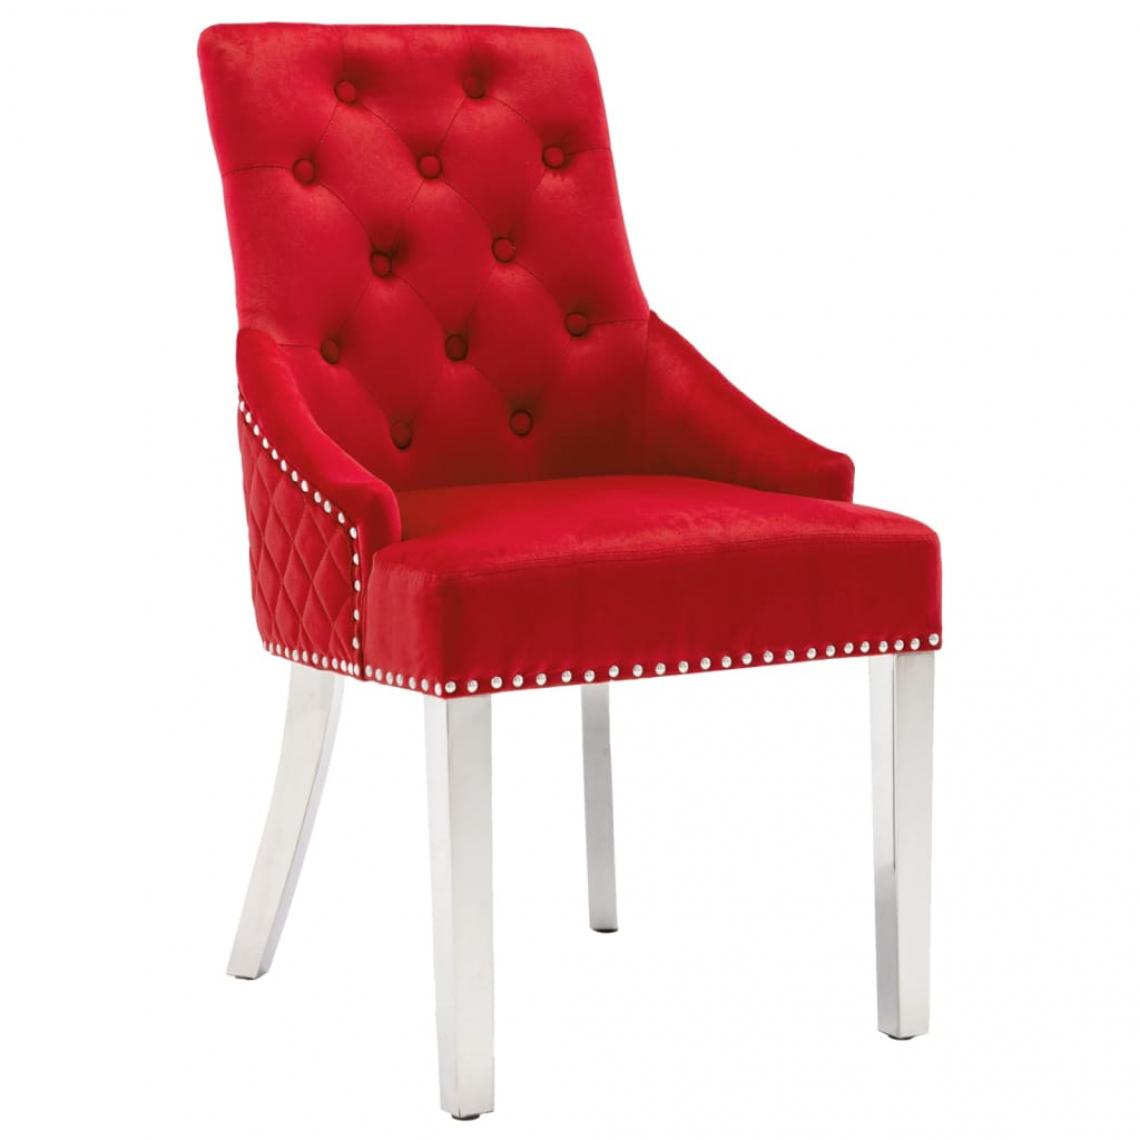 Vidaxl - vidaXL Chaise de salle à manger Rouge bordeaux Velours - Chaises